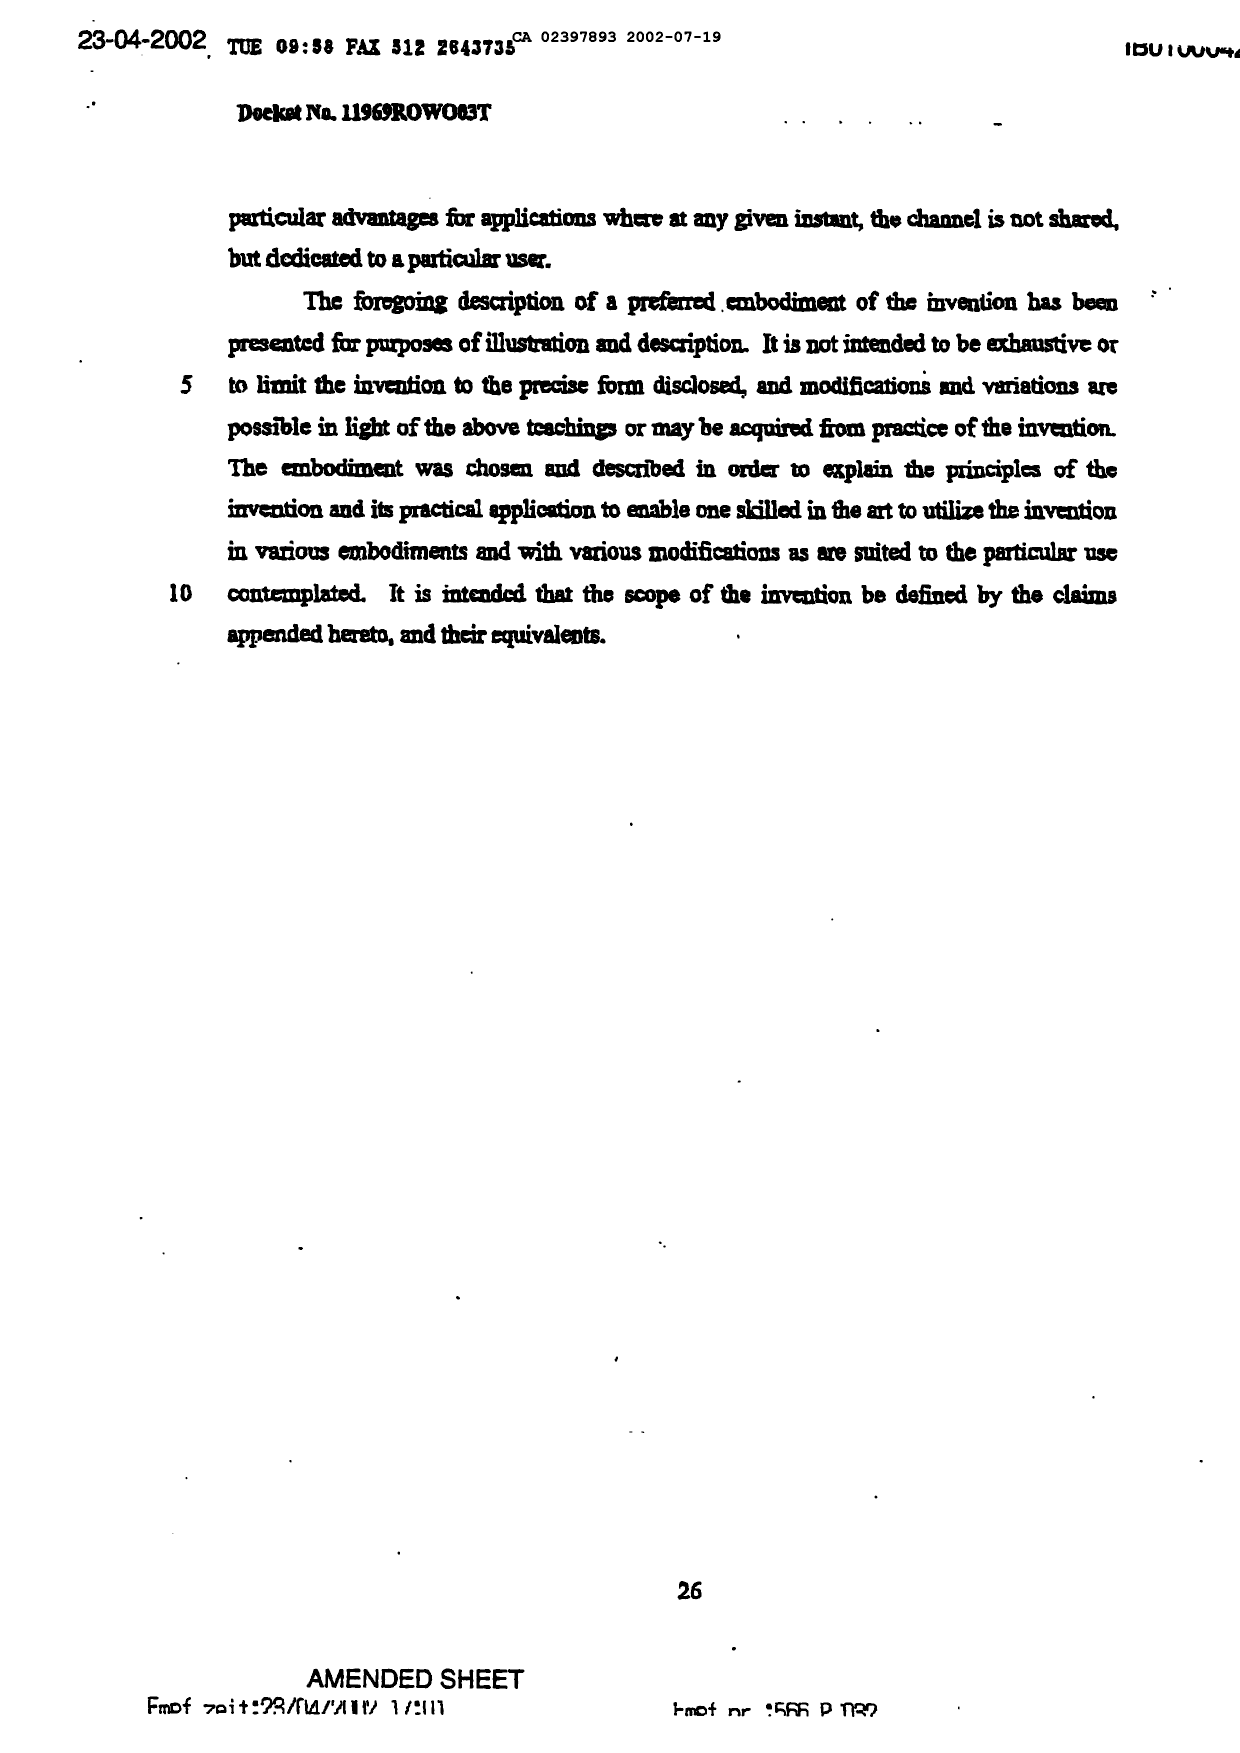 Canadian Patent Document 2397893. Description 20020719. Image 26 of 26